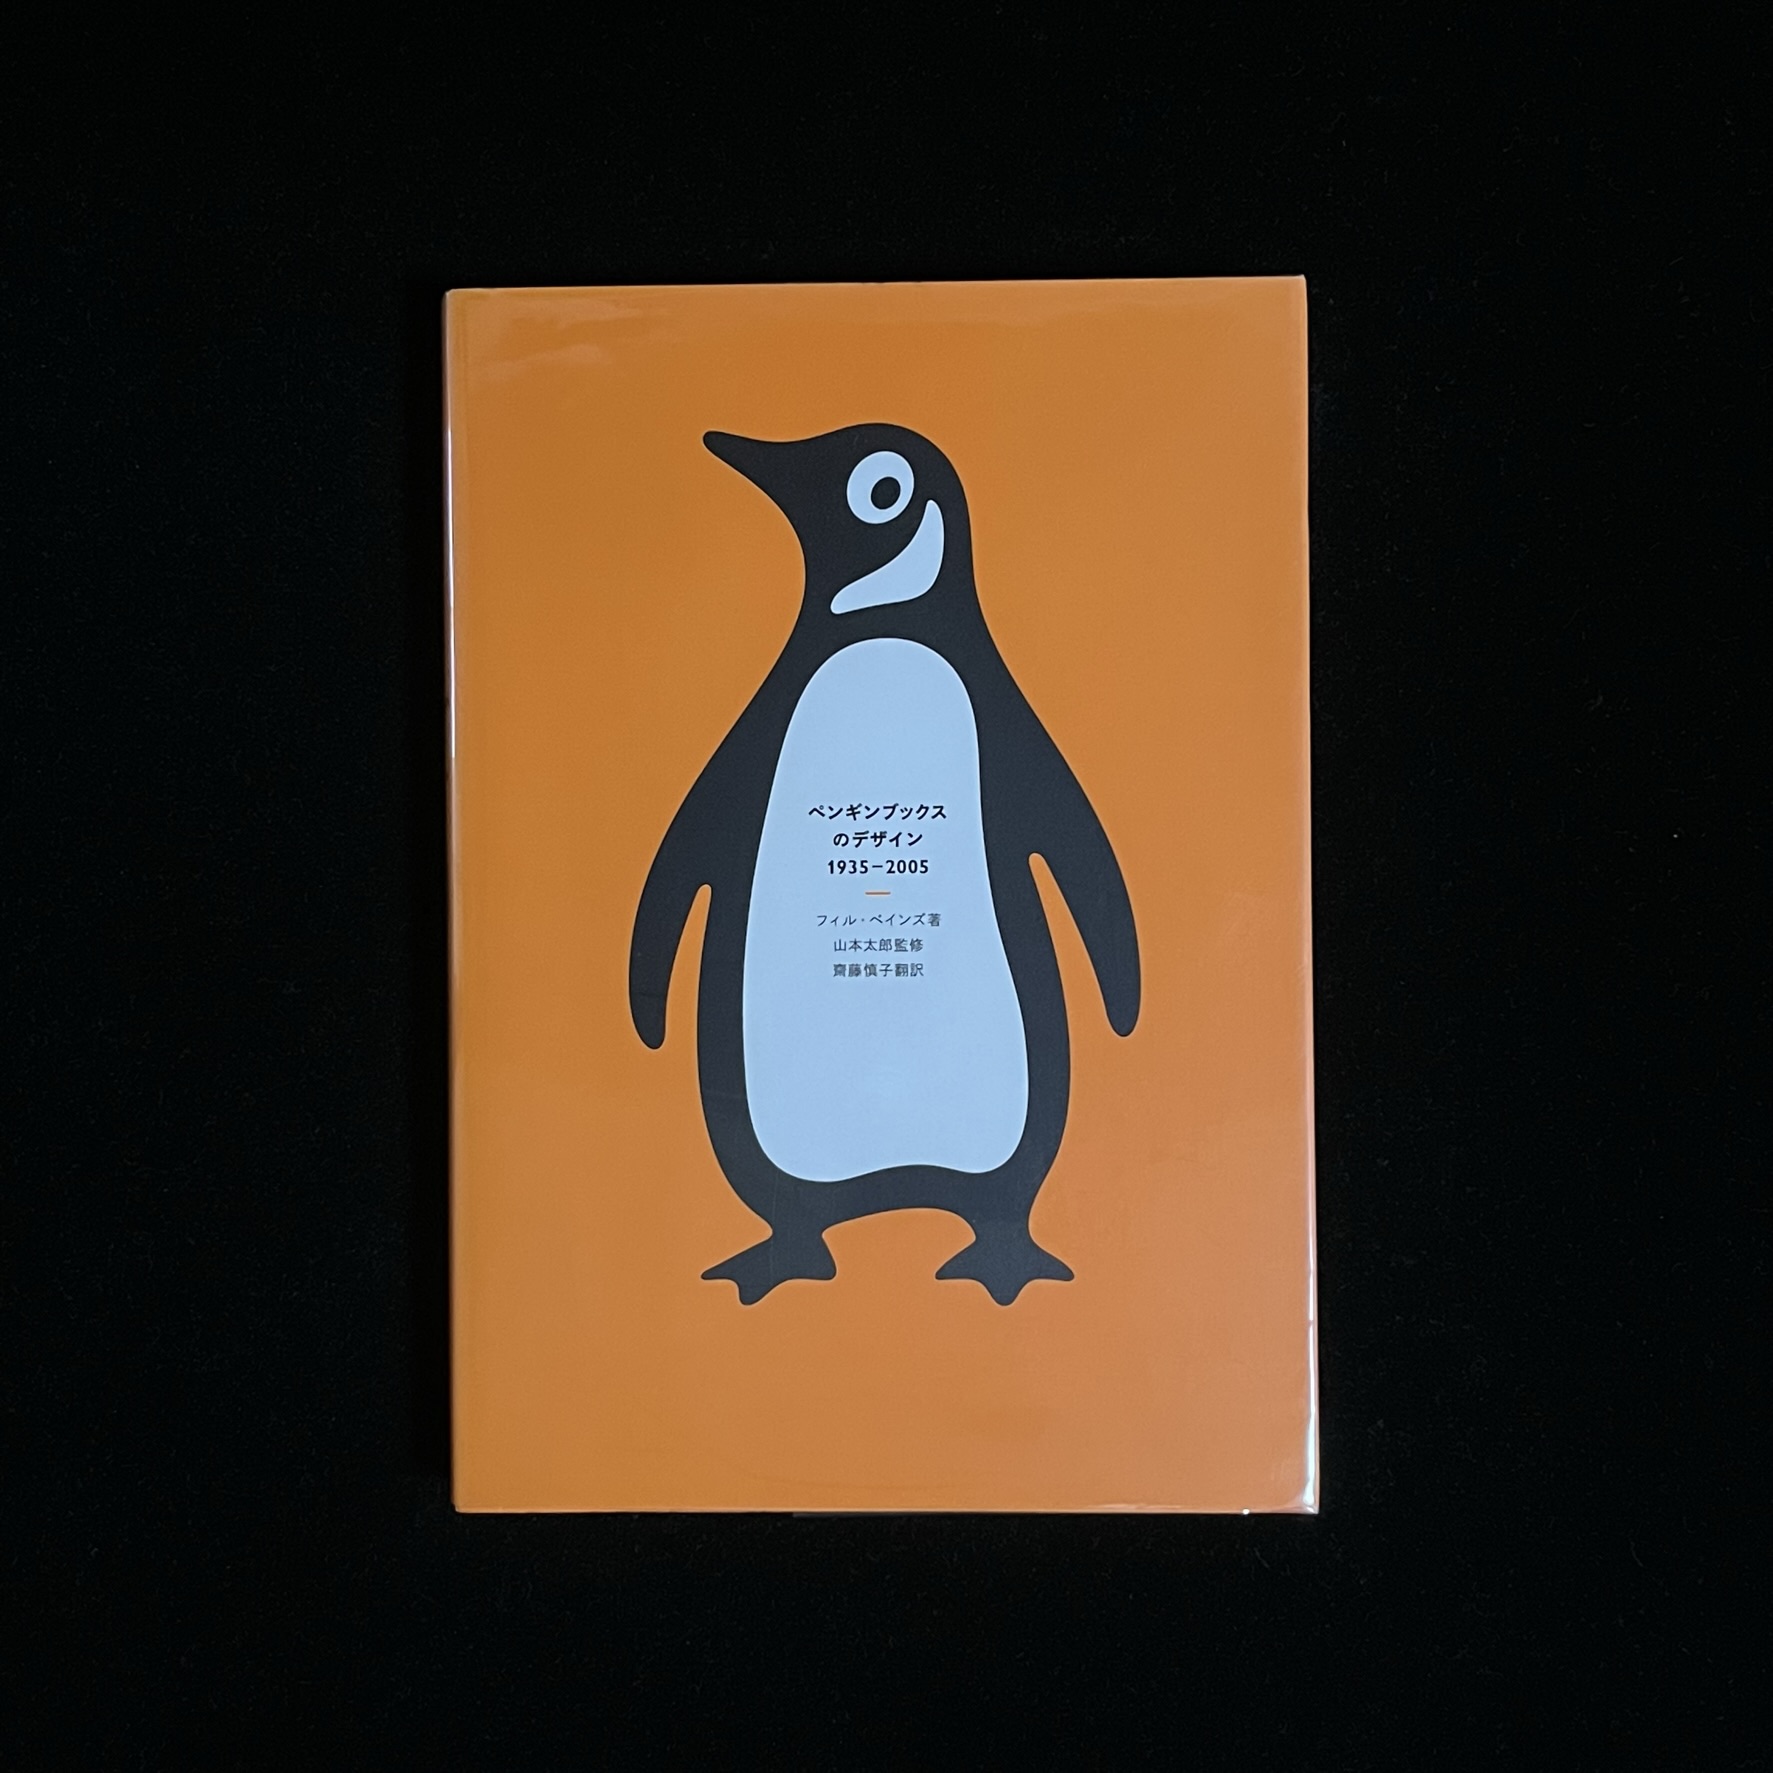 『ペンギンブックスのデザイン1935-2005』の表紙の写真。表紙に大きくペンギンのイラストが描かれています。